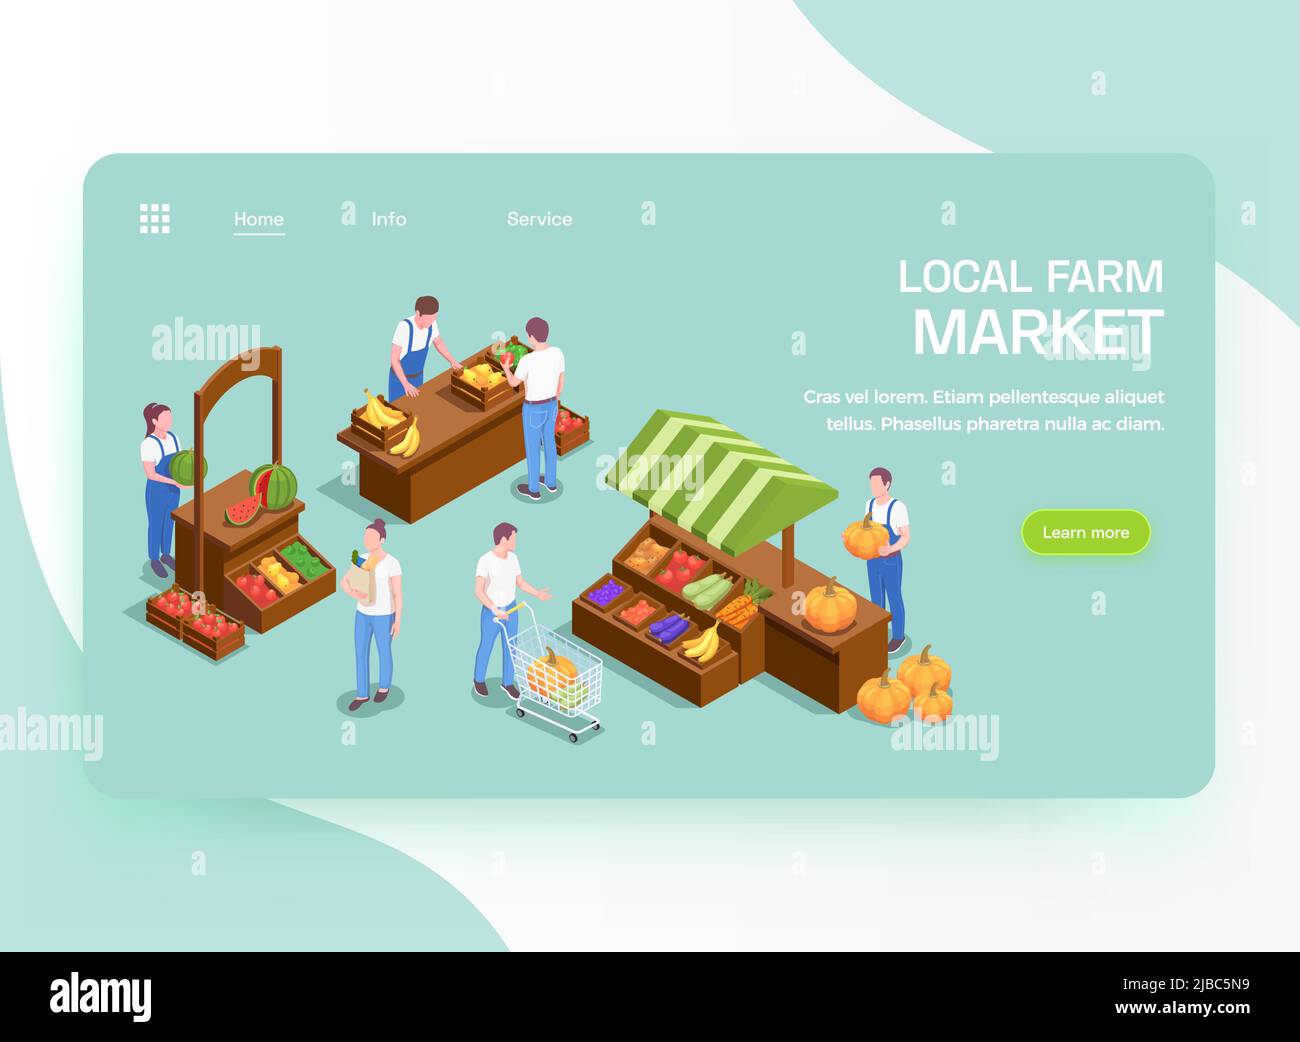 Lokale Bauern frische Bio-Produkte online bieten isometrische Landing Page mit Obst Gemüse Markt Stände Vektor-Illustration Stock Vektor